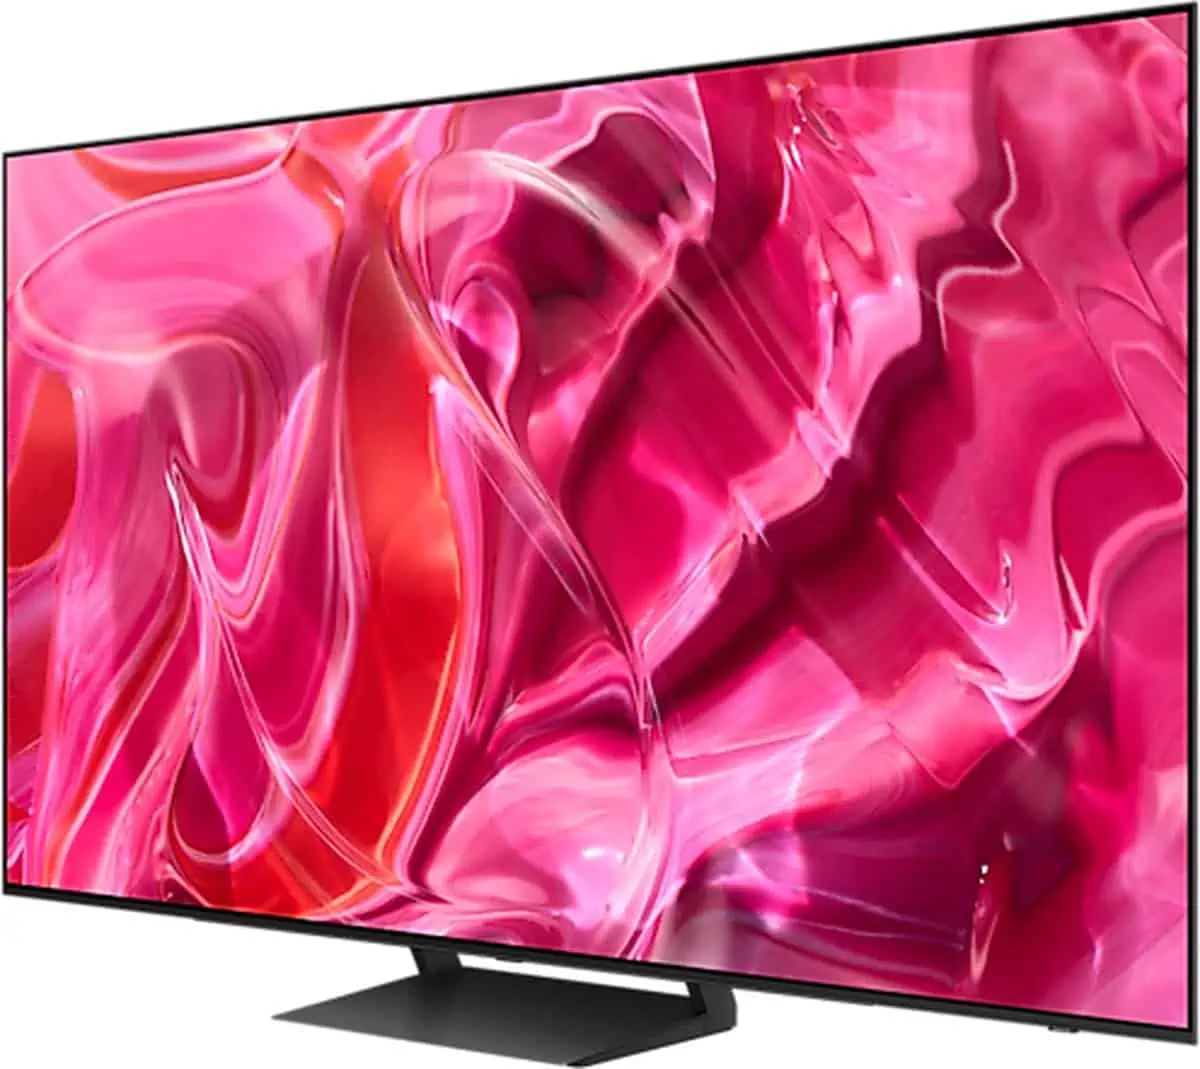 Samsung tv met roze/rode achtergrond, schuin zij-aanzicht